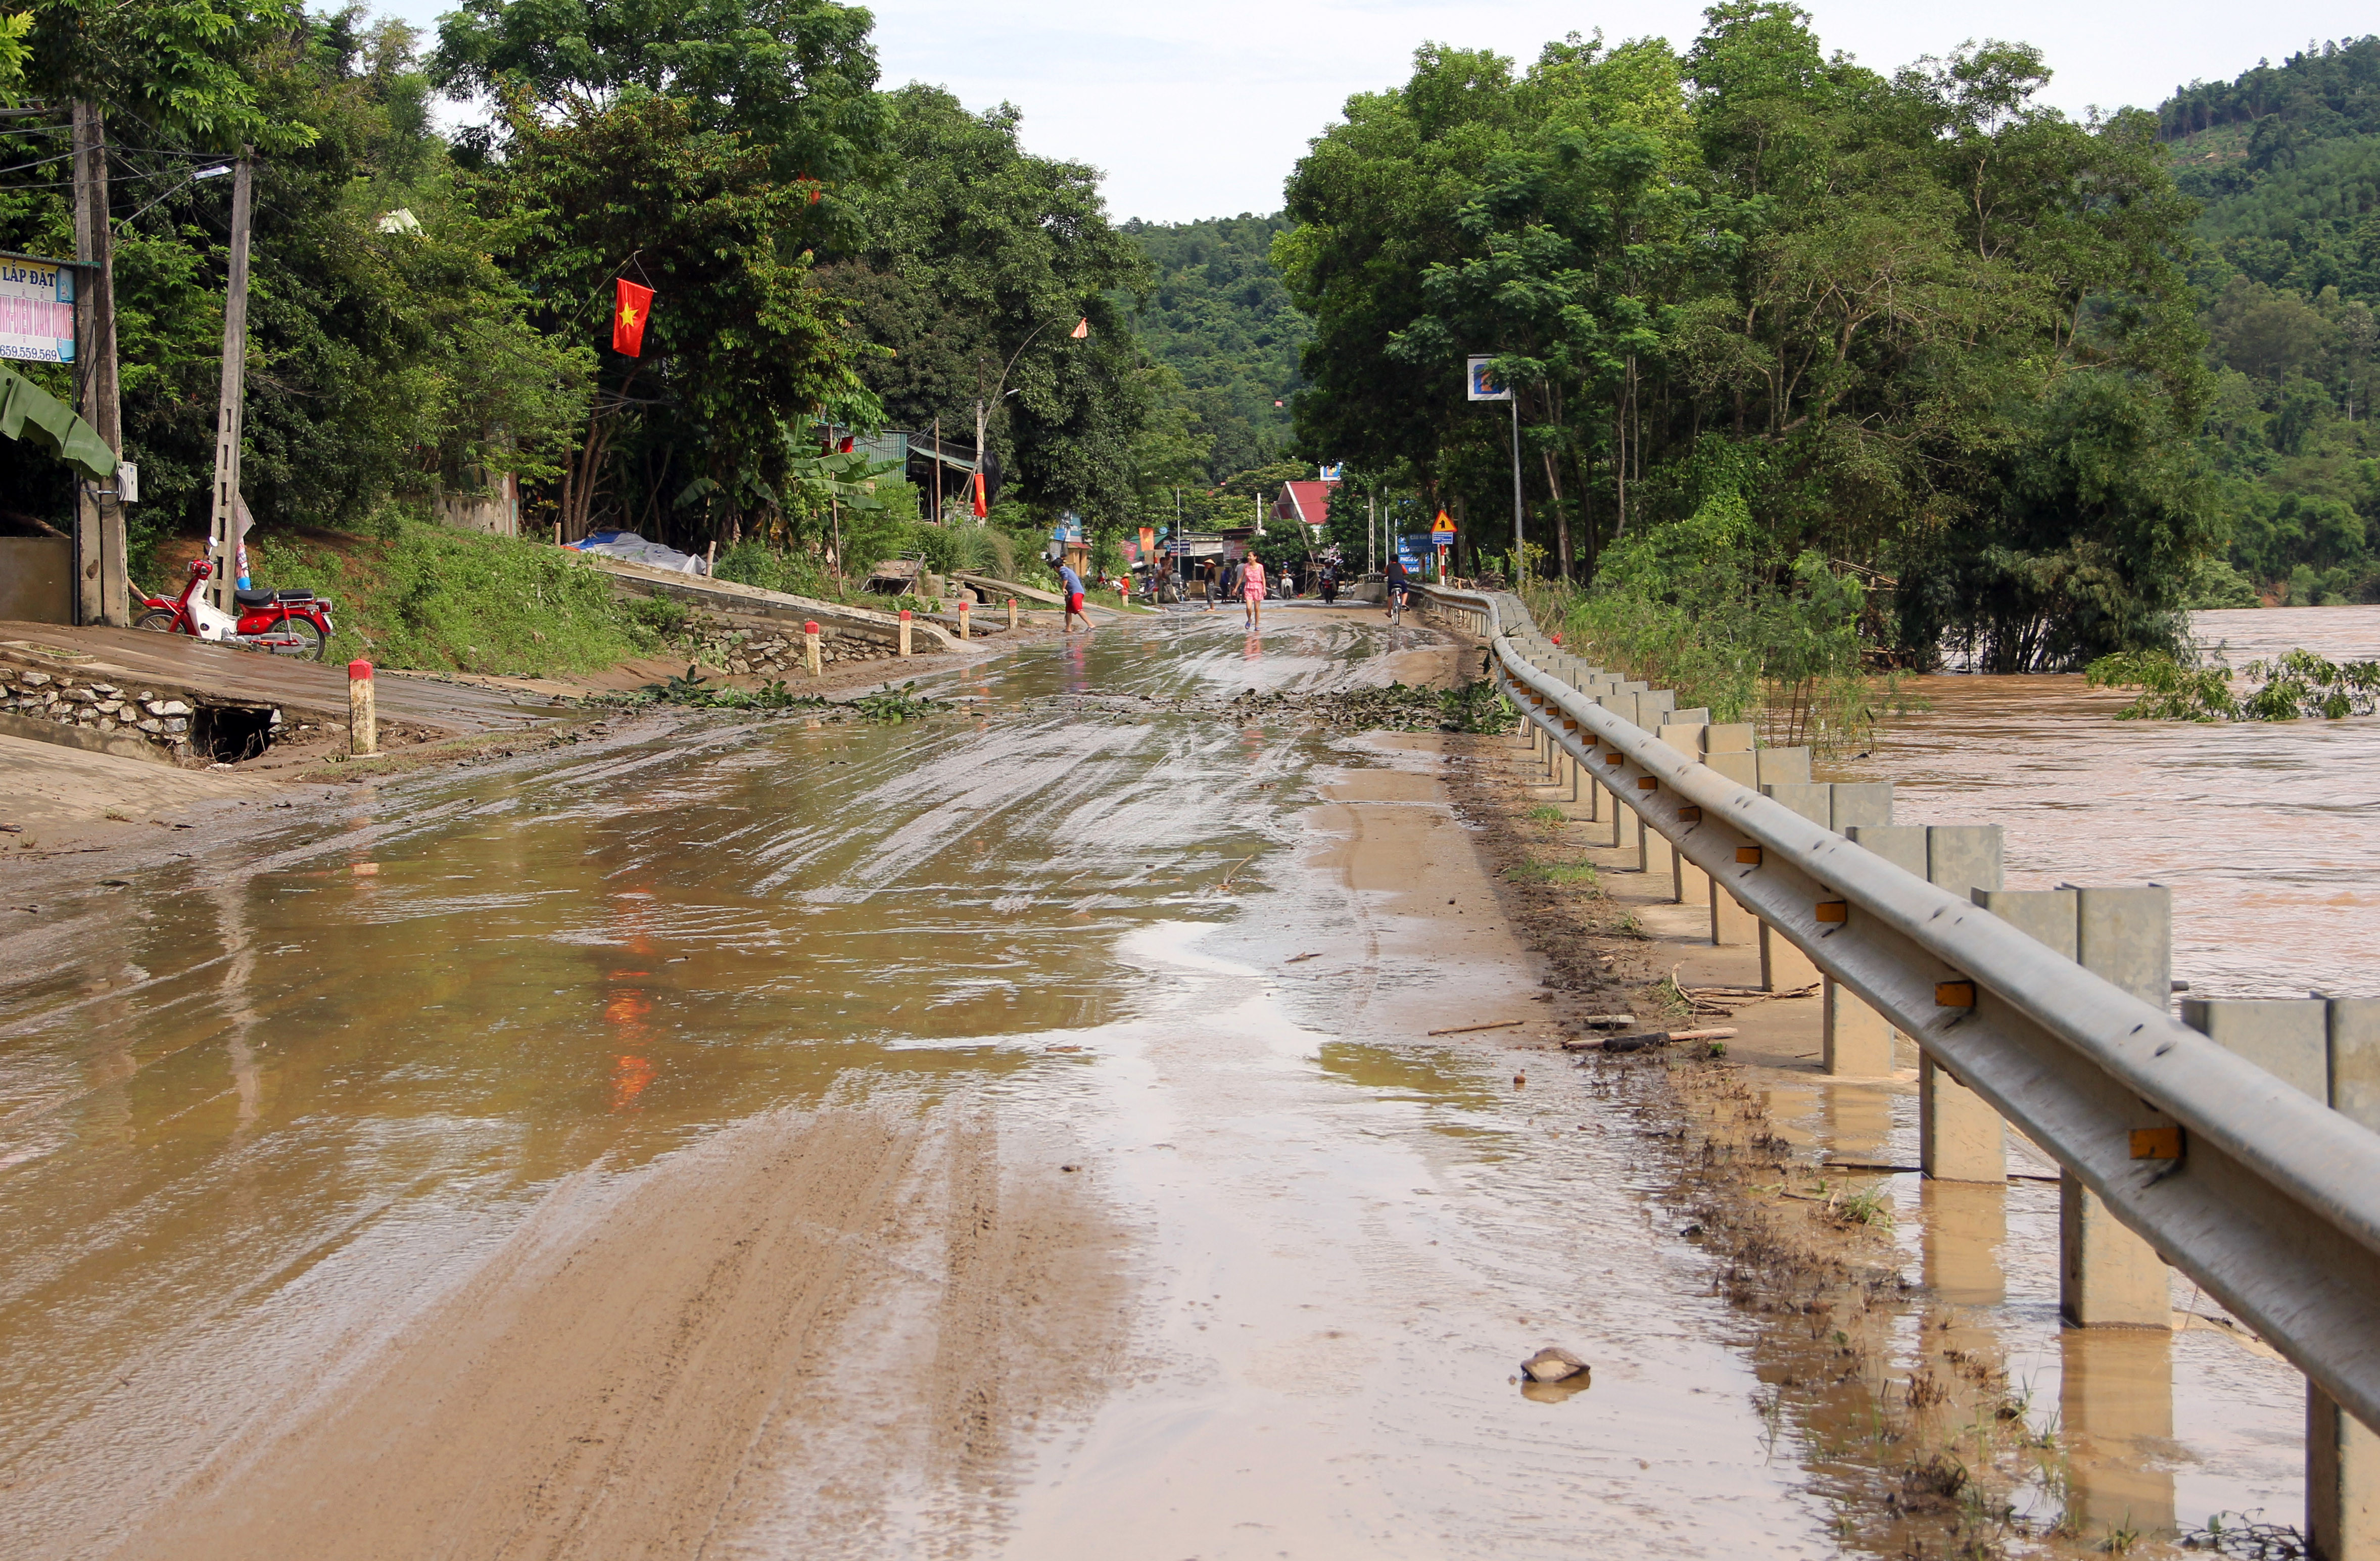 Hiện nay, nước sông Cả đã giảm xuống, QL 7 đoạn qua xã Tam Quang cũng đã có thể lưu thông bình thường. Nhà và đồ đạc của các hộ dân bị bùn bủa vây.